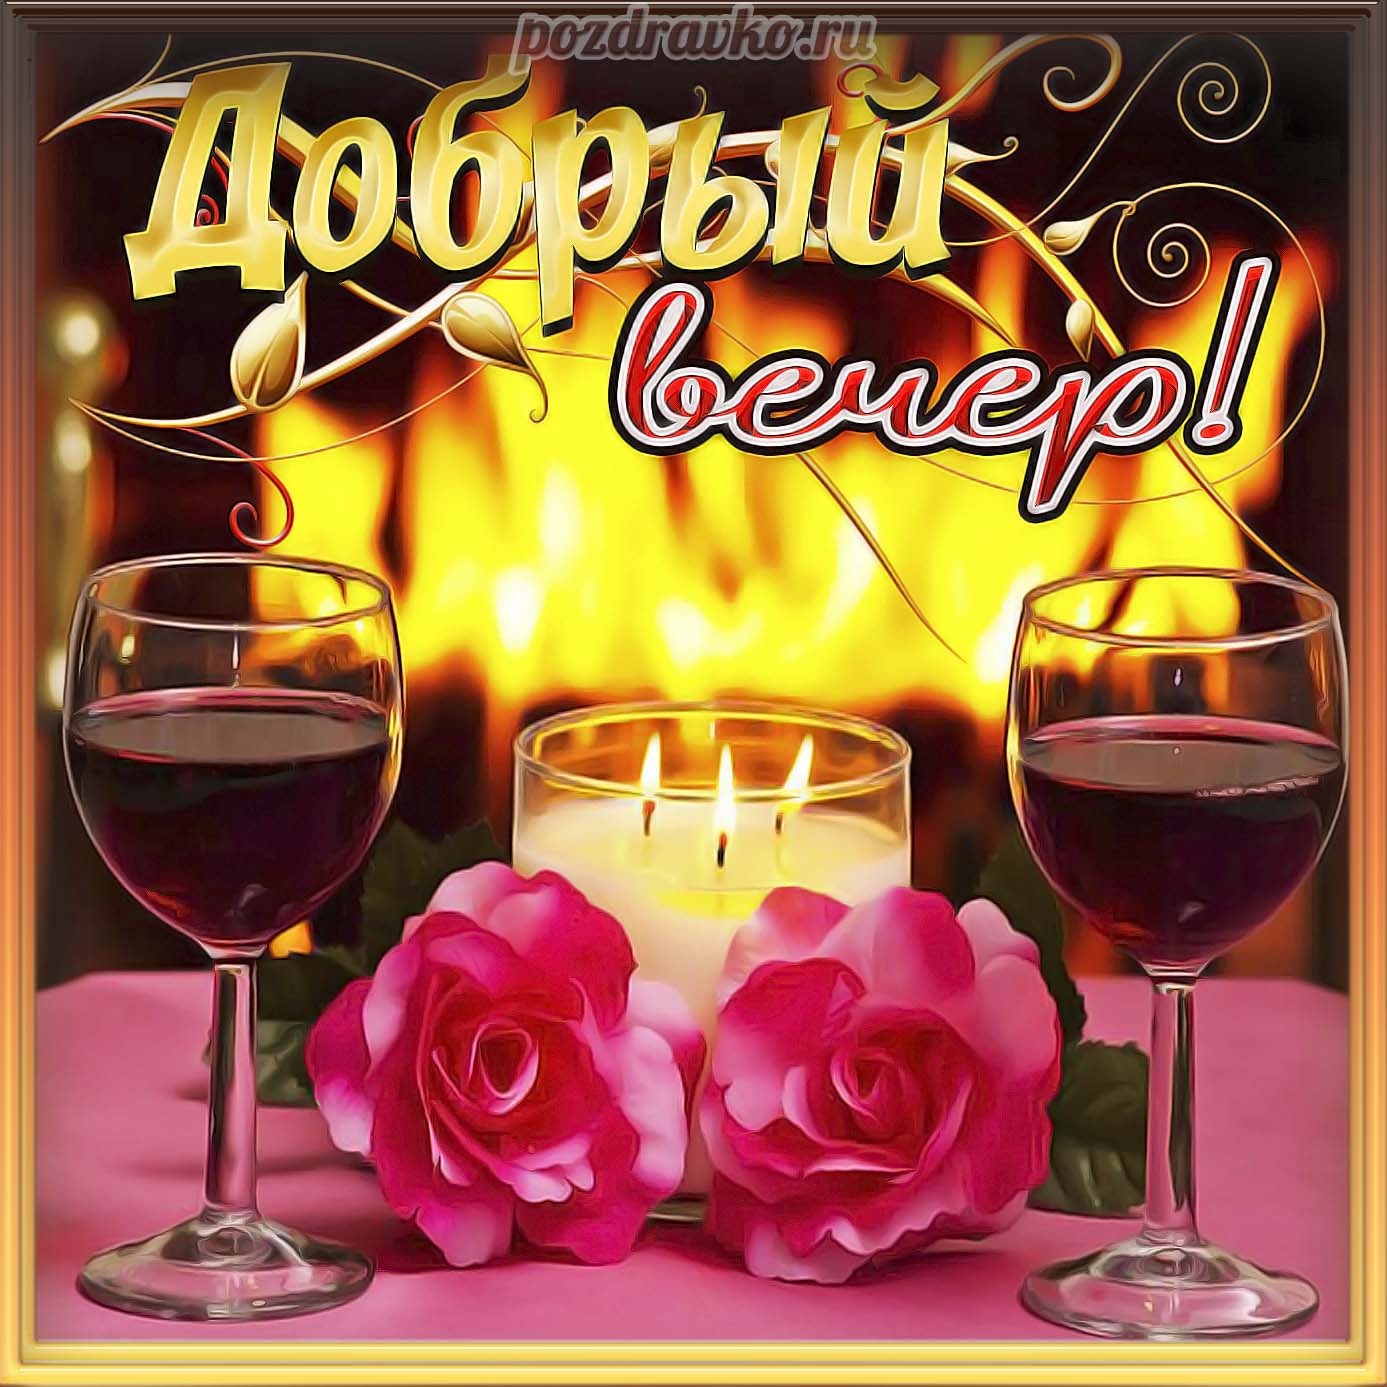 Открытка - добрый вечер с бокалами вина и розами. Скачать бесплатно или отправить картинку.